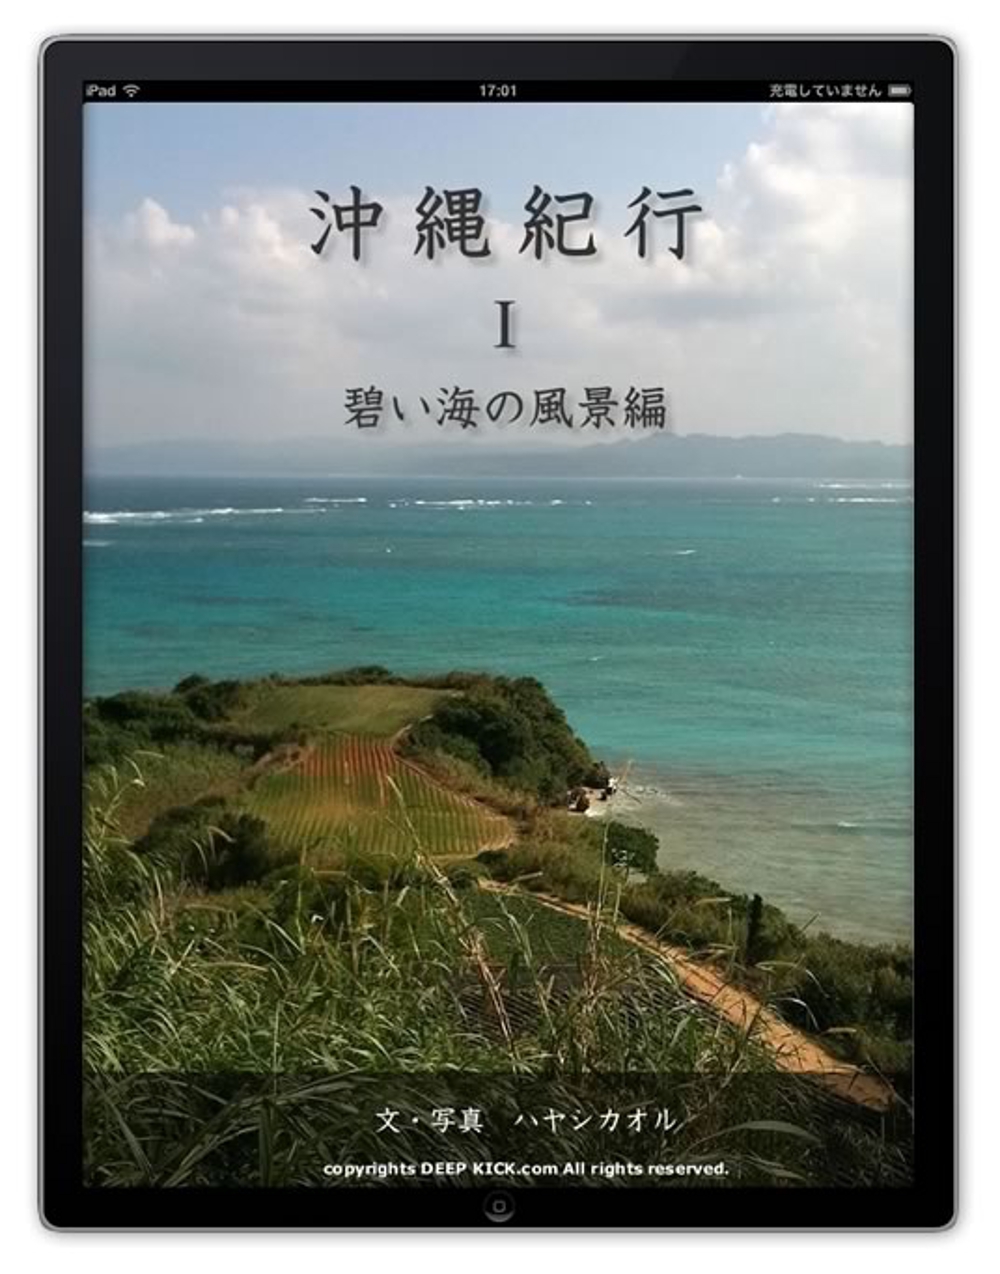 沖縄写真集・沖縄紀行1 碧い海の風景編 for iPhone/iPad